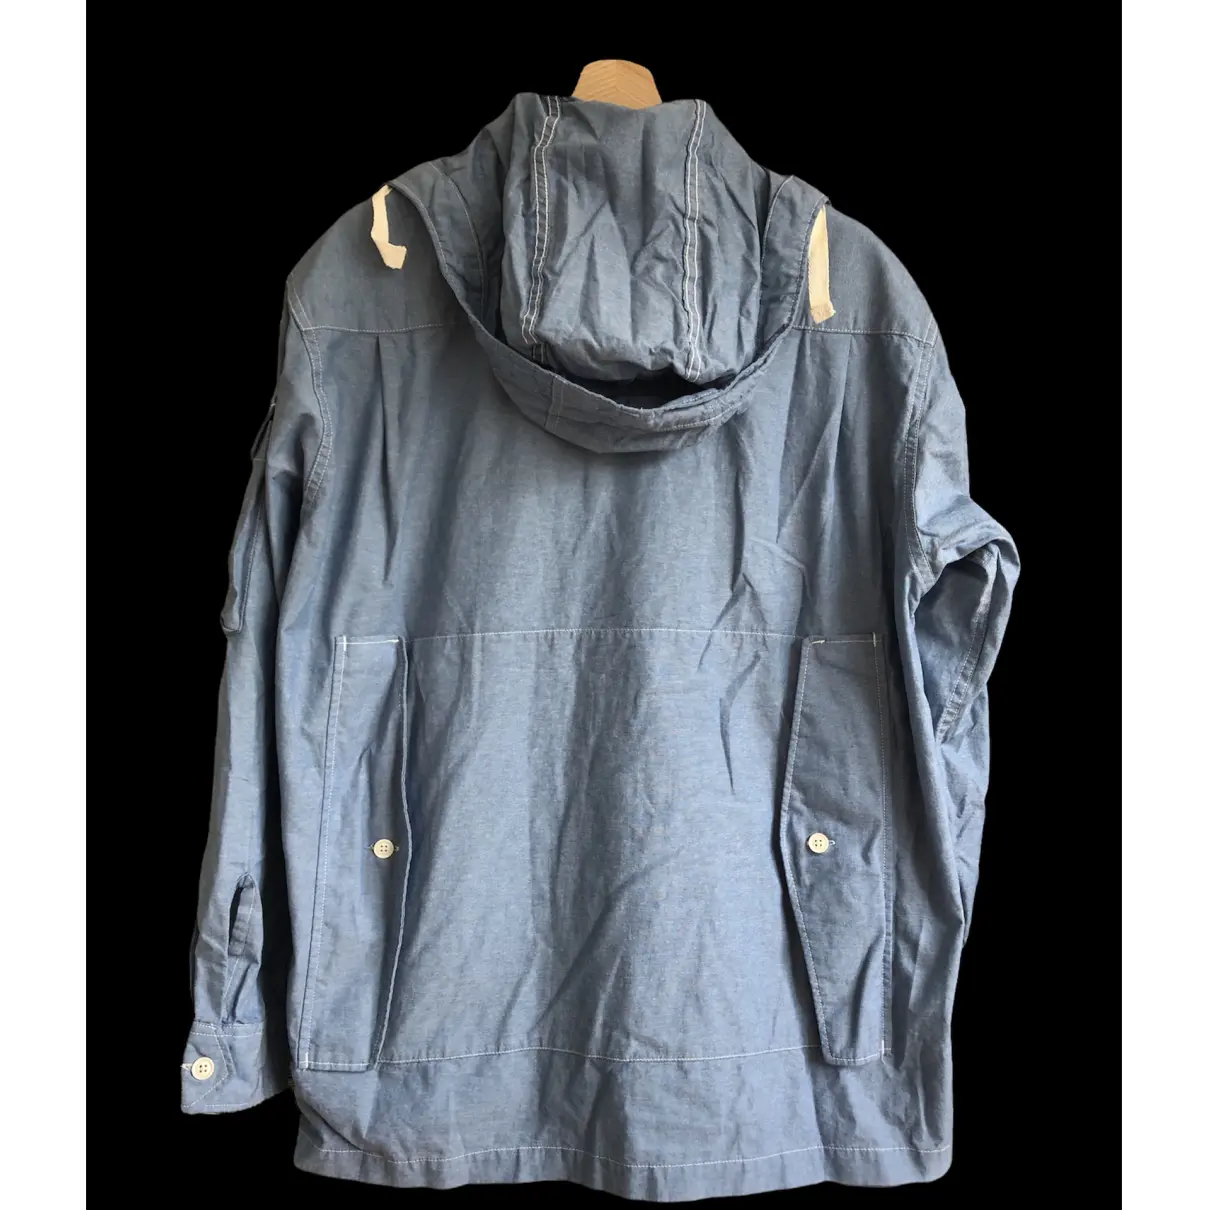 Buy Engineered Garments Vest online